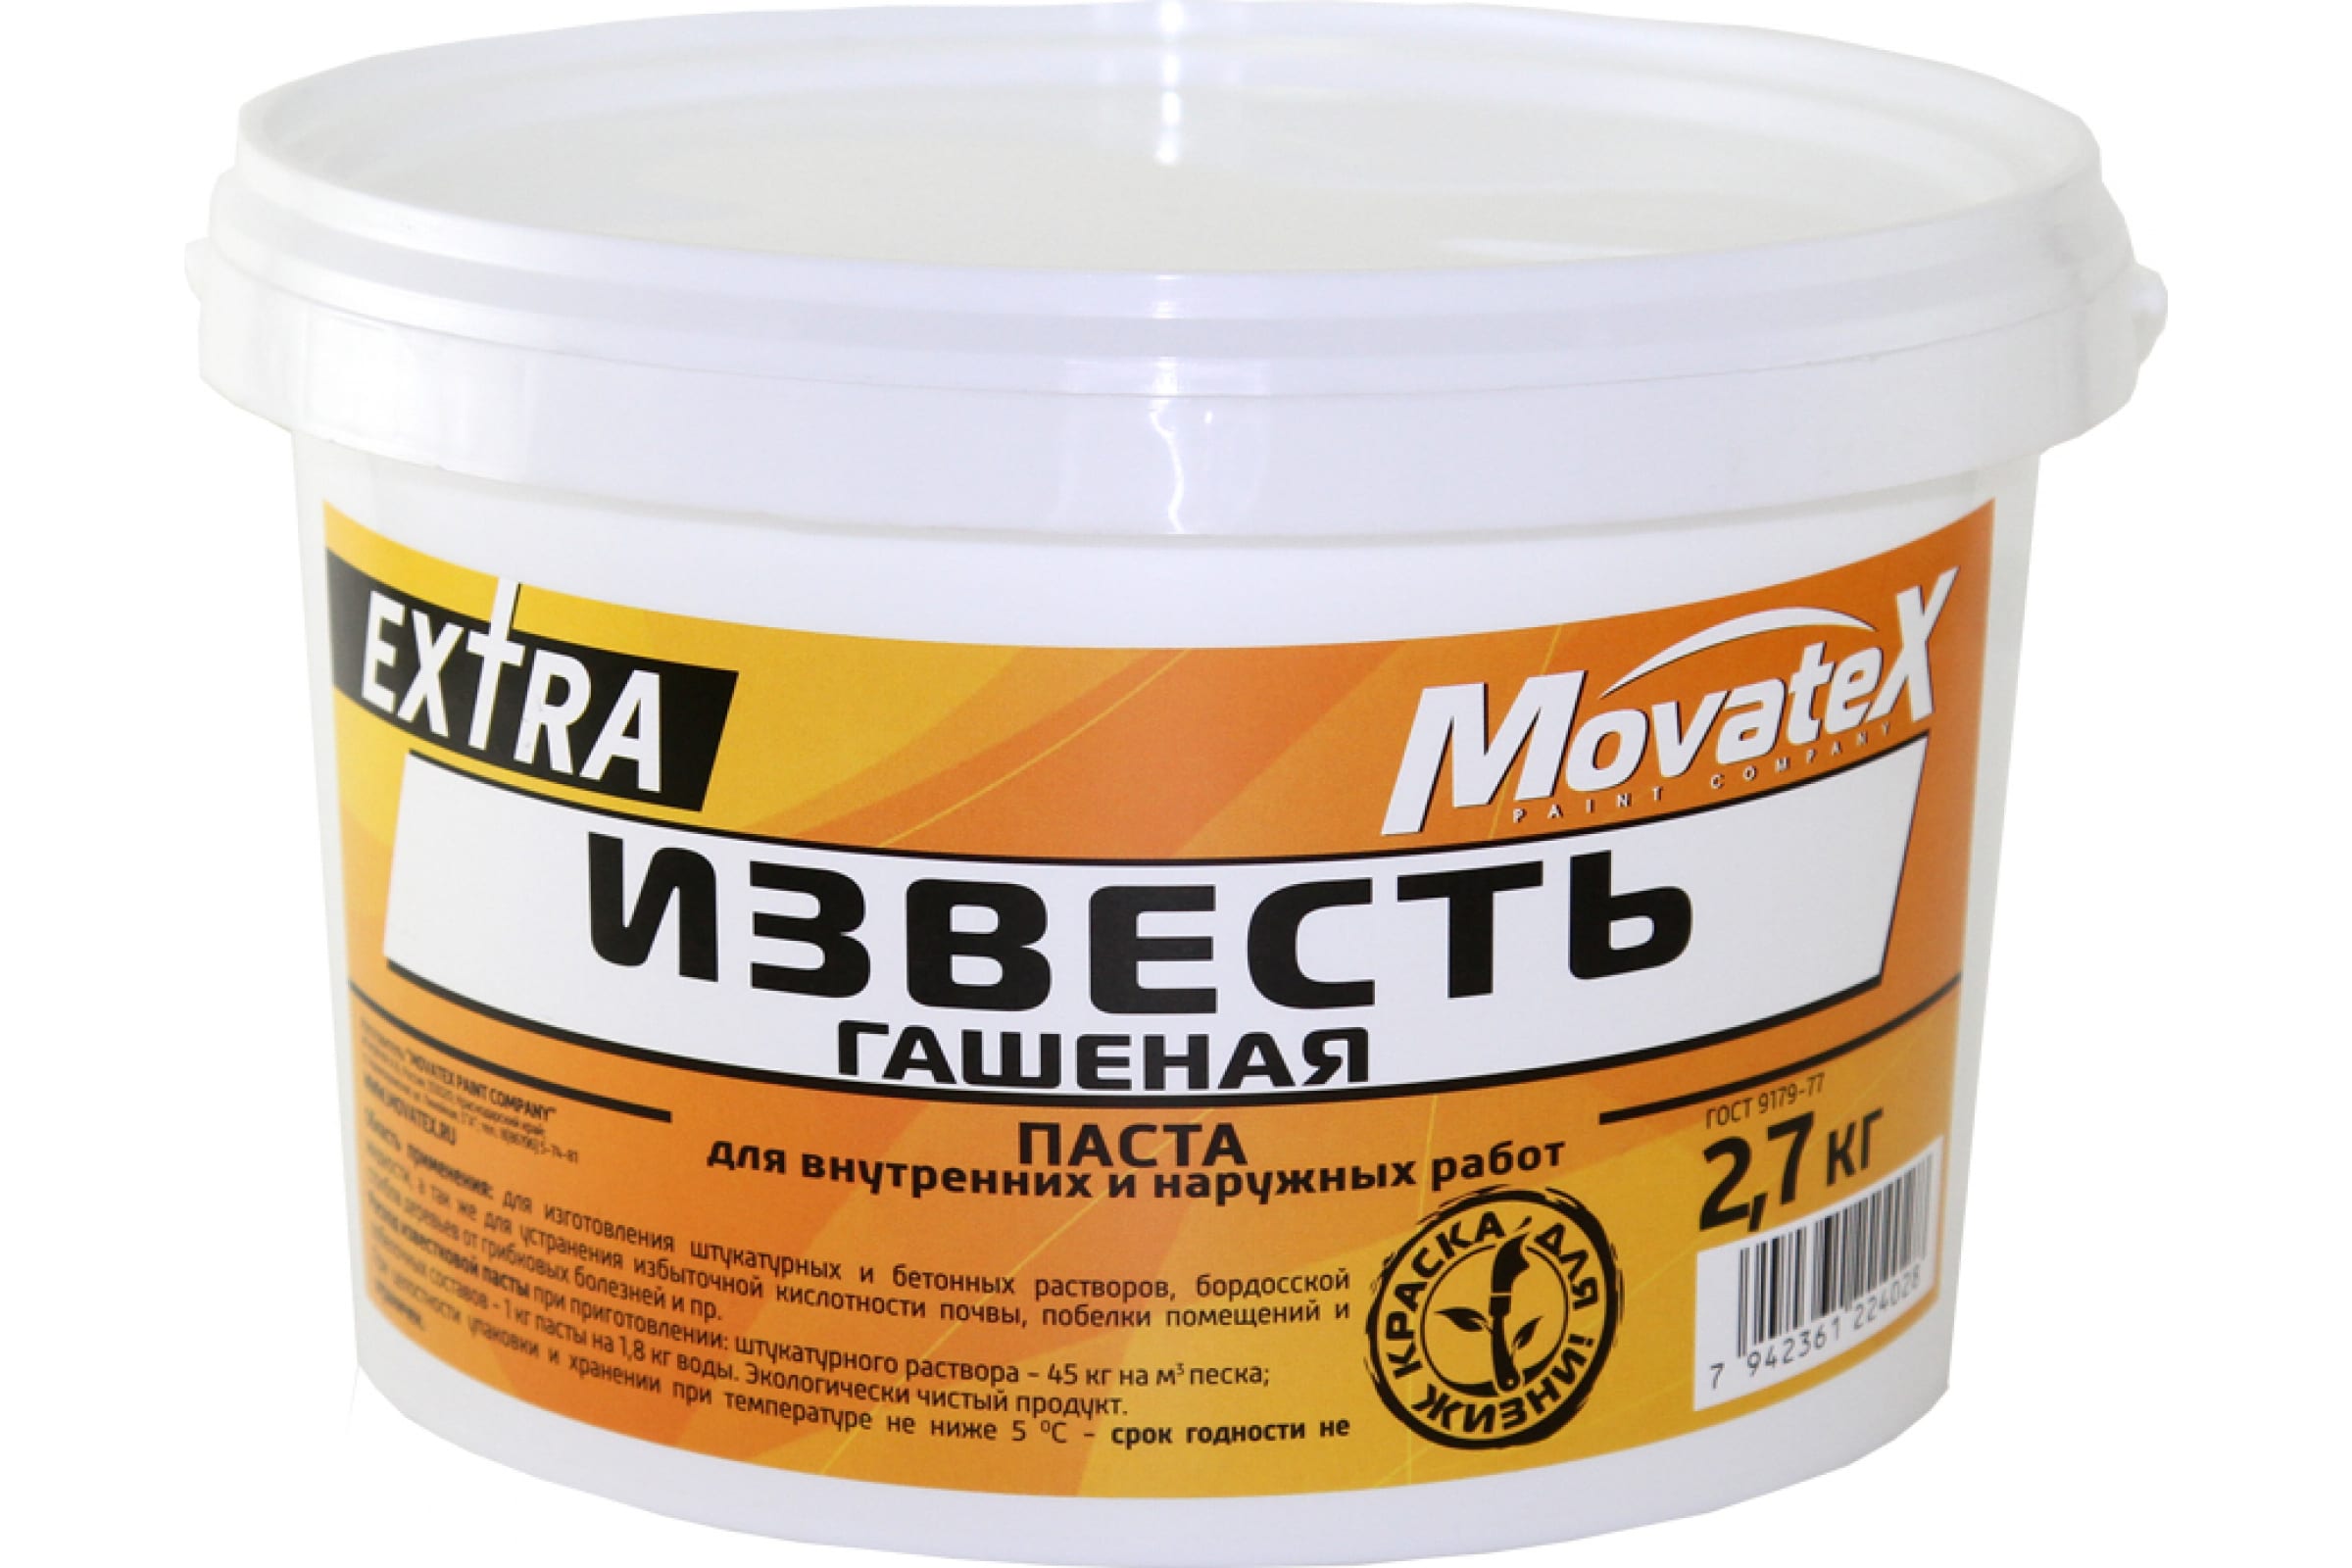 Movatex Известь гашеная EXTRA 2,7кг Н00057